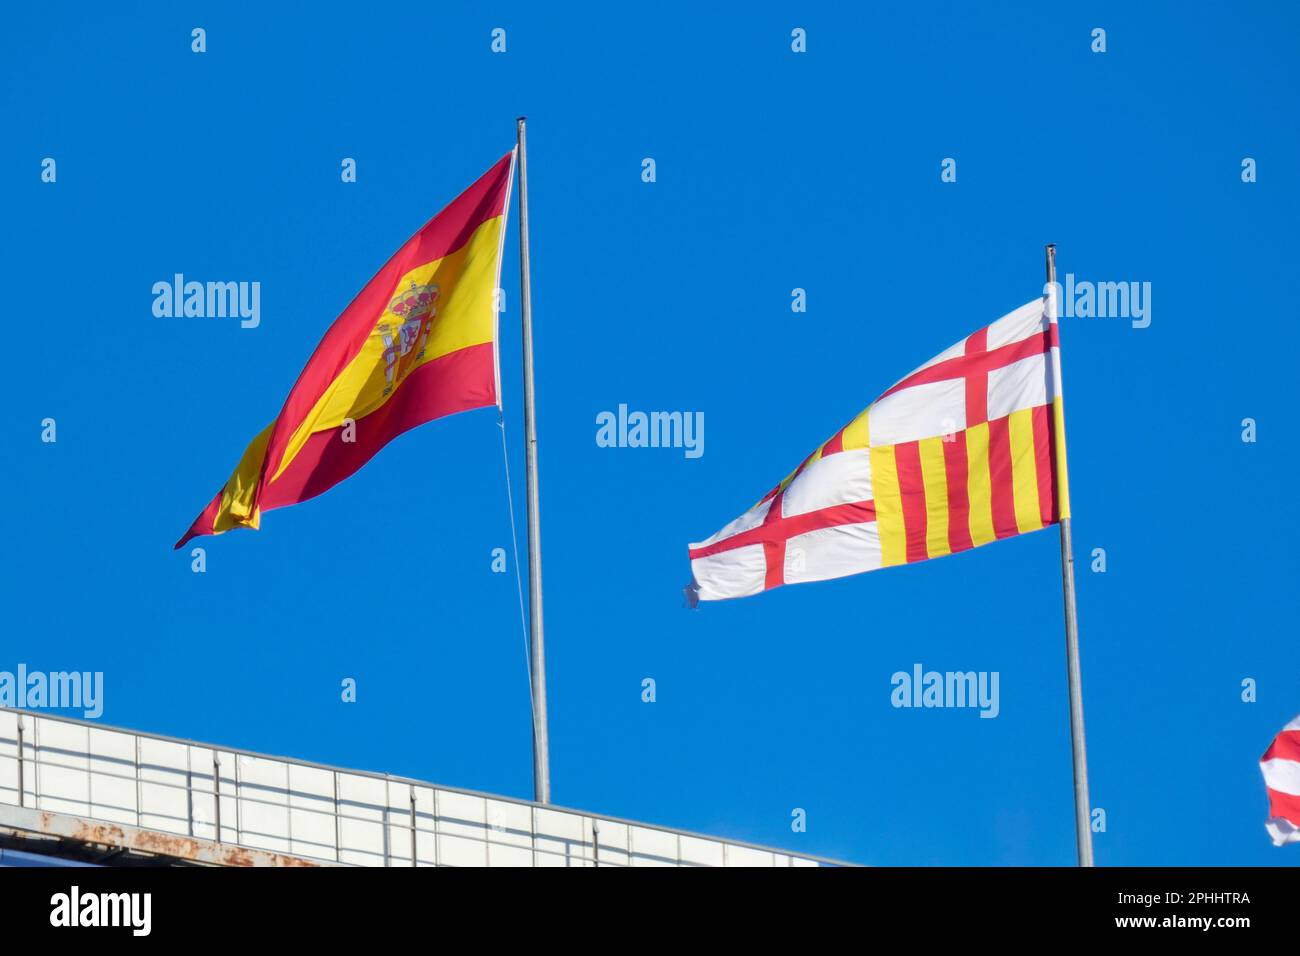 Banderas de diferentes países y equipos deportivos, banderas con rayas de diferentes colores. Foto de stock